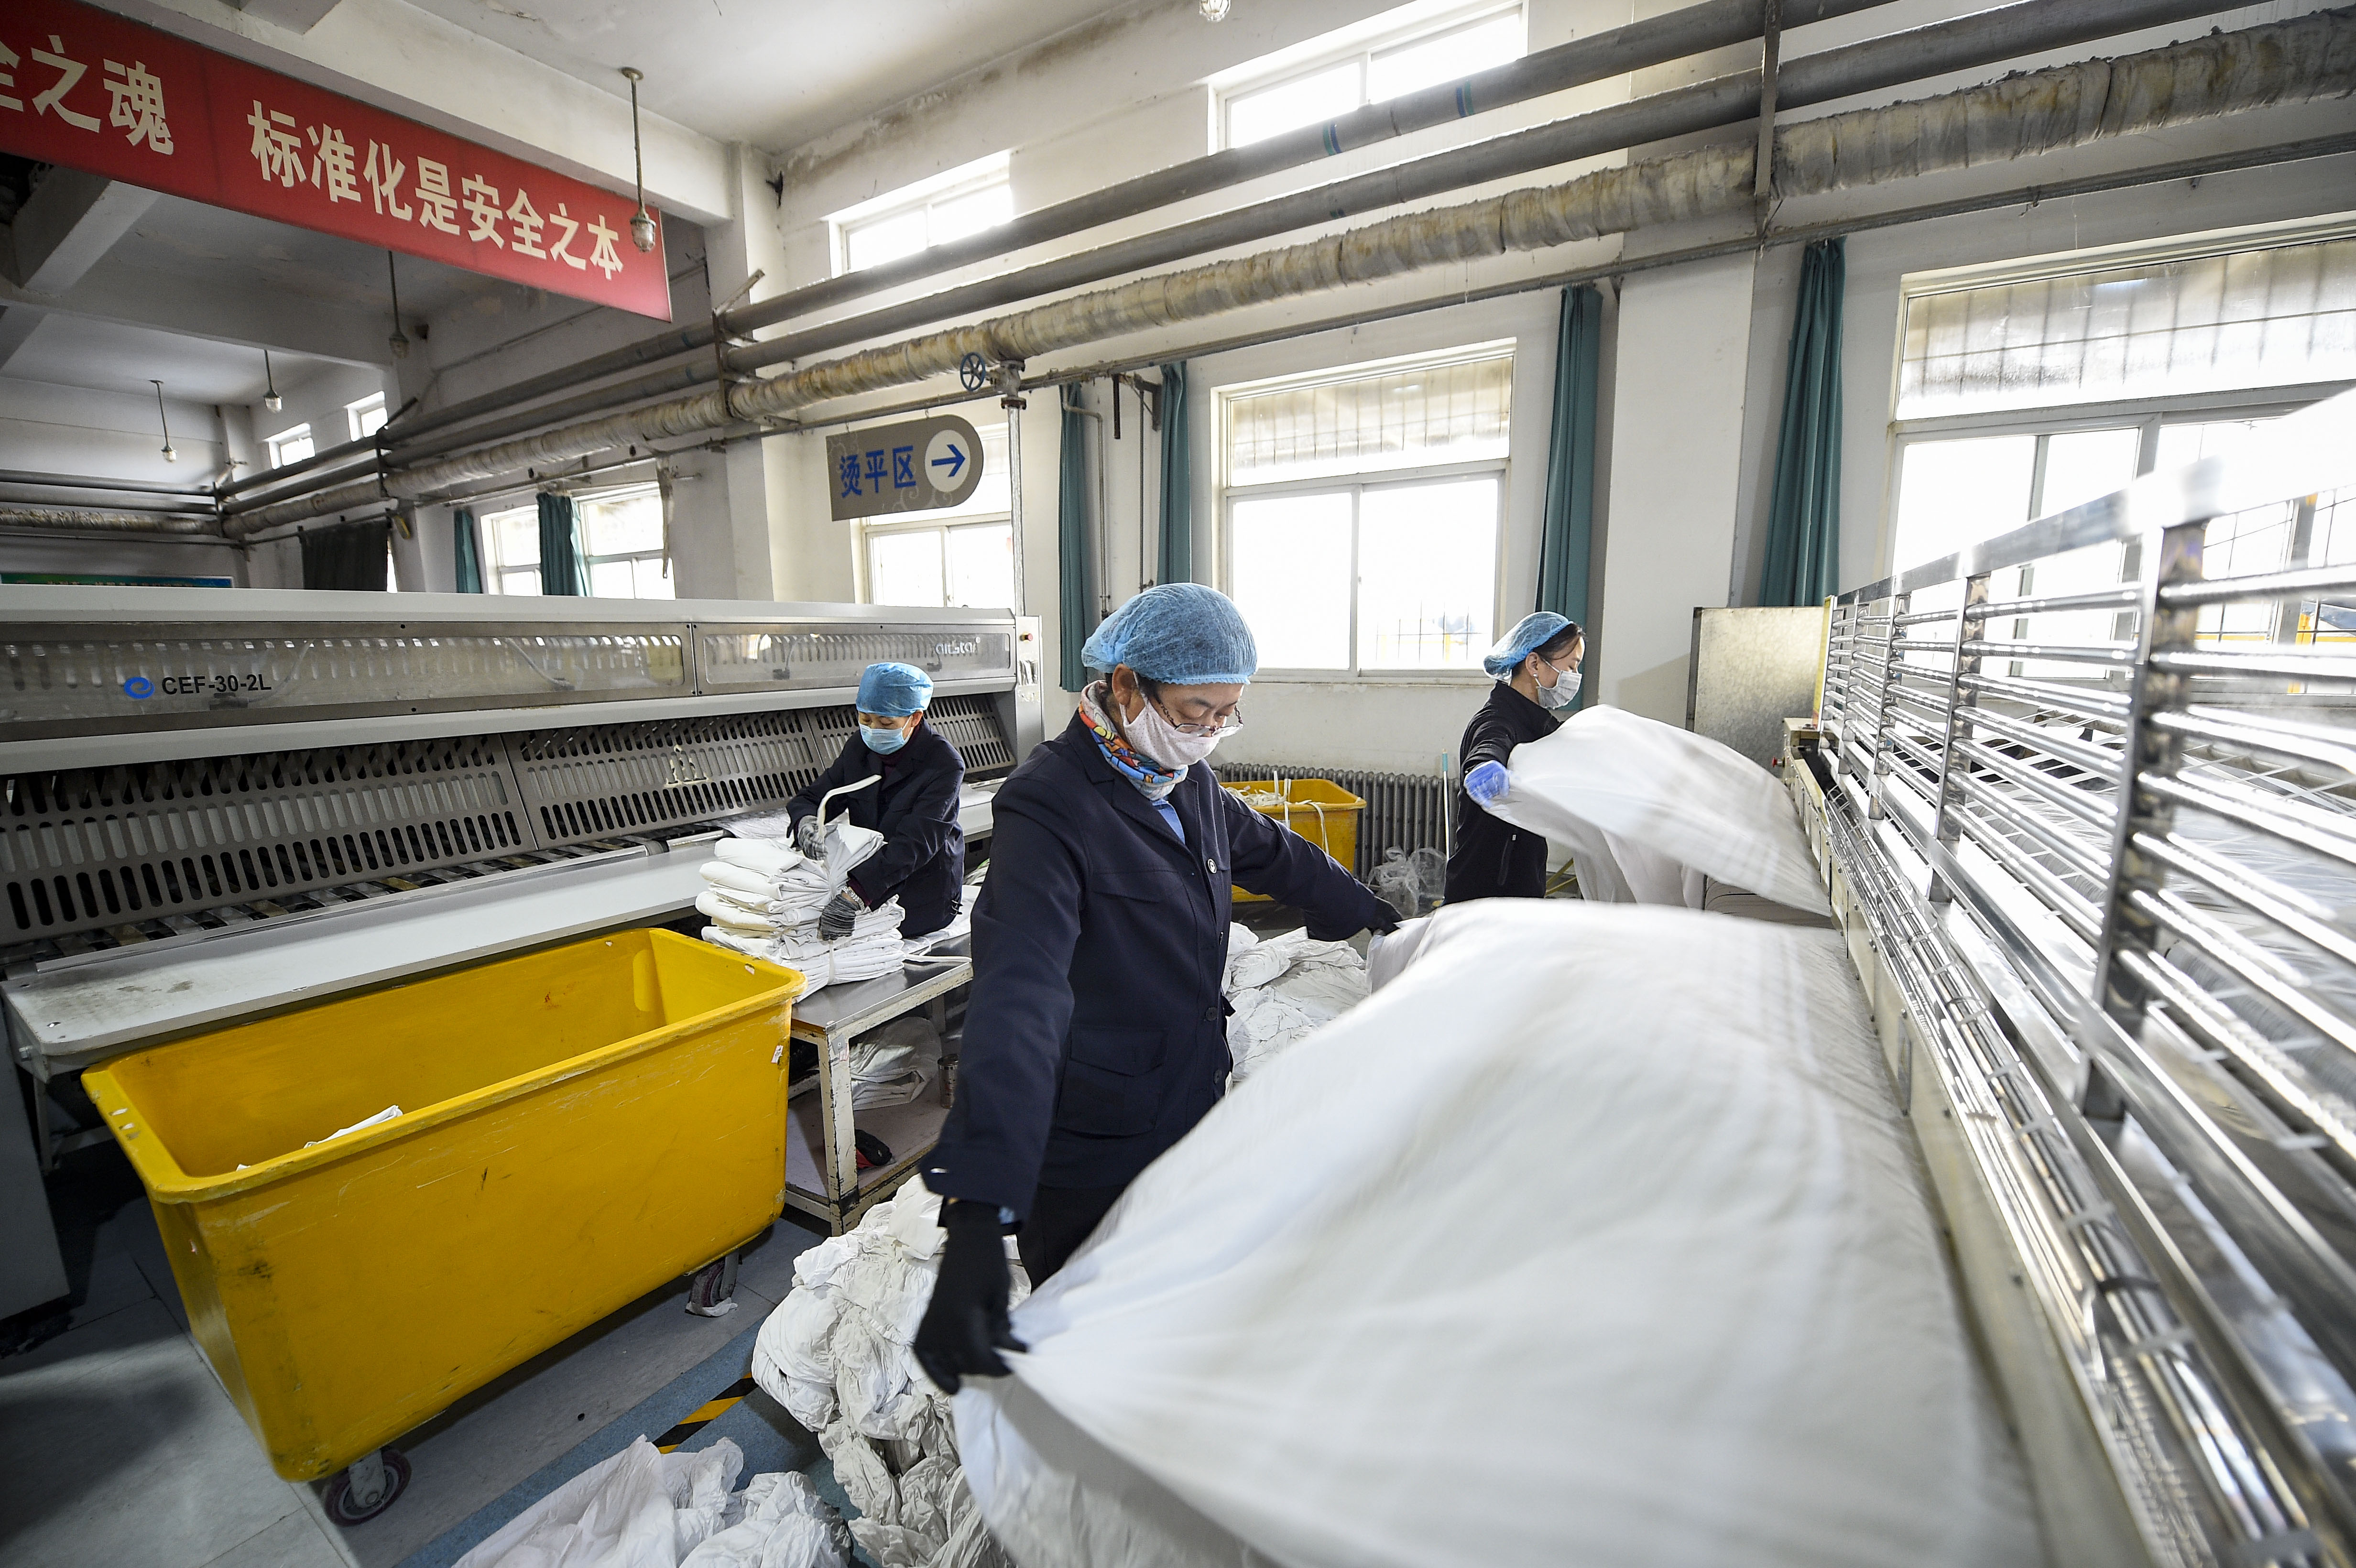 在兰州铁路局银川客运段供应车间洗涤厂的厂房里,工人对洗好的卧具